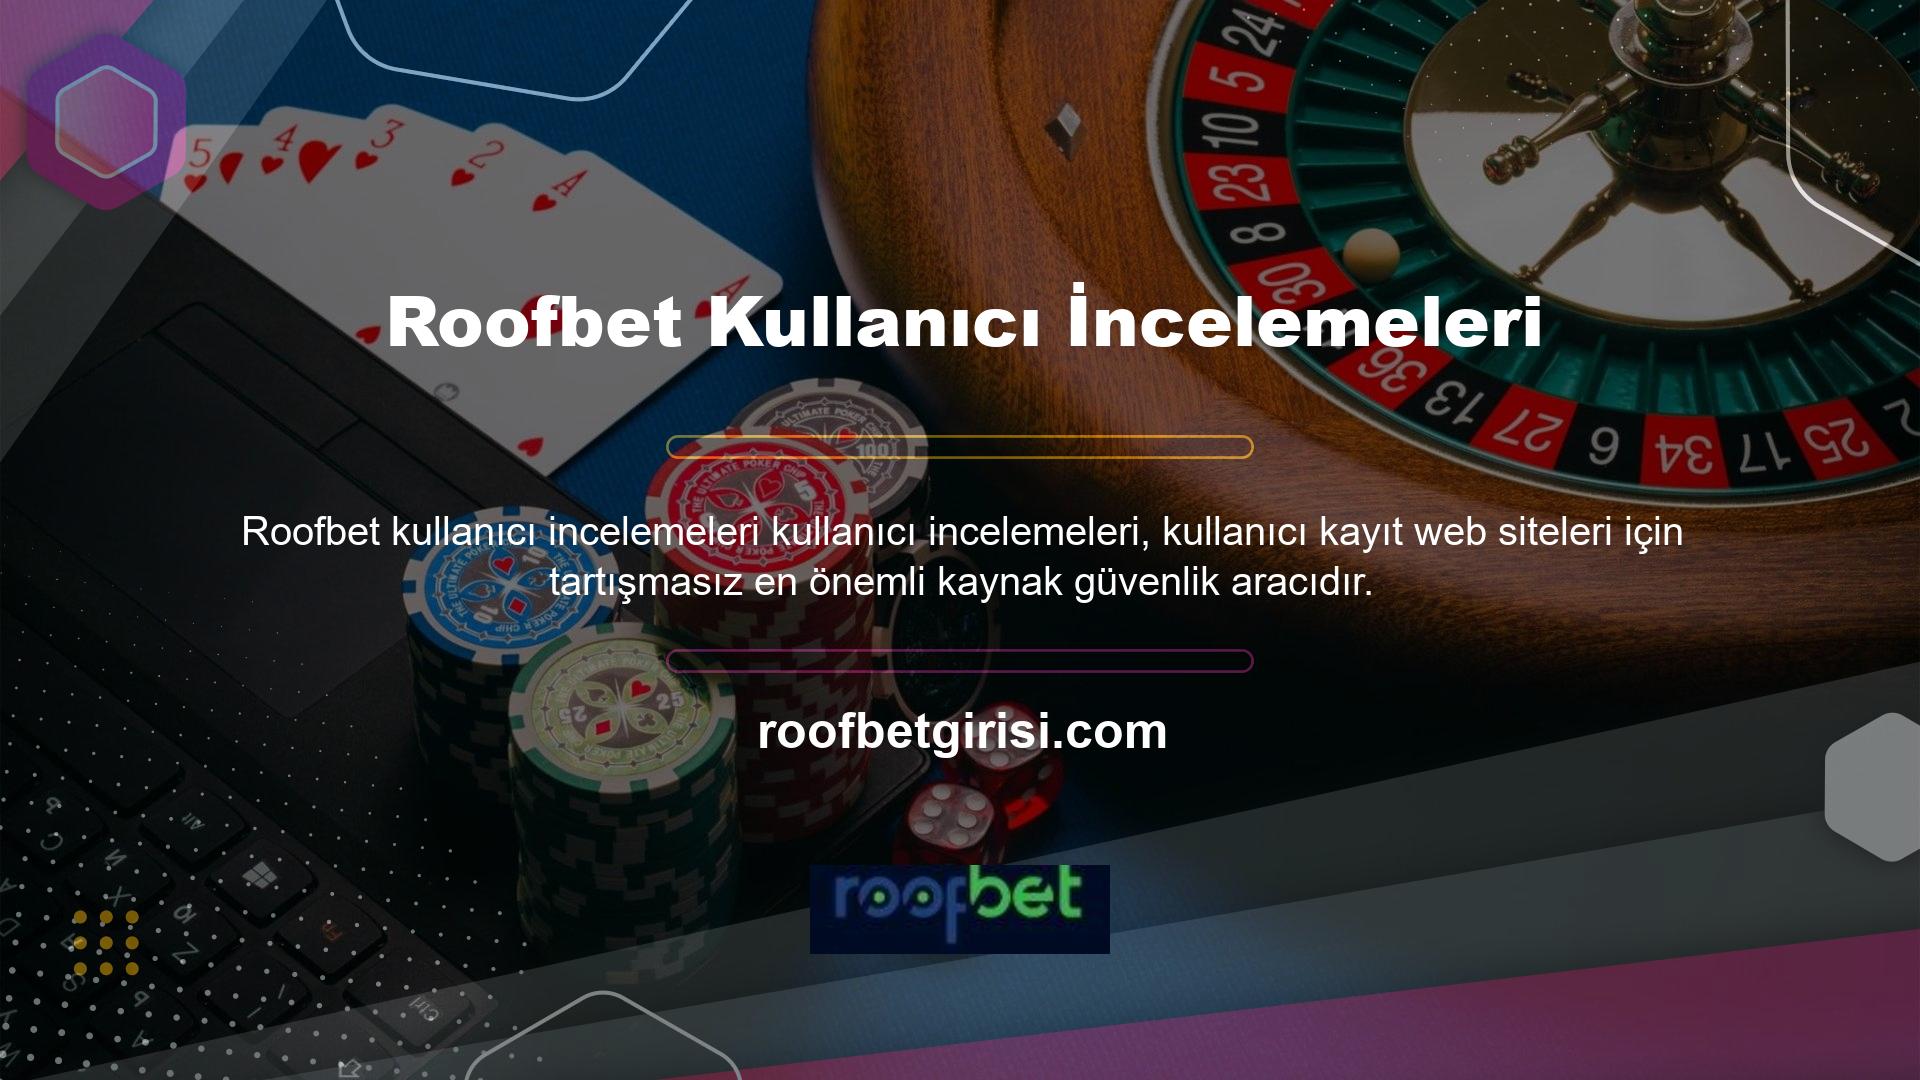 Elbette, bir casino sitesinin güvenli olduğundan emin olmak için Roofbet spor bahisleri ilk kontrol kaynağı, kullanıcı incelemeleridir